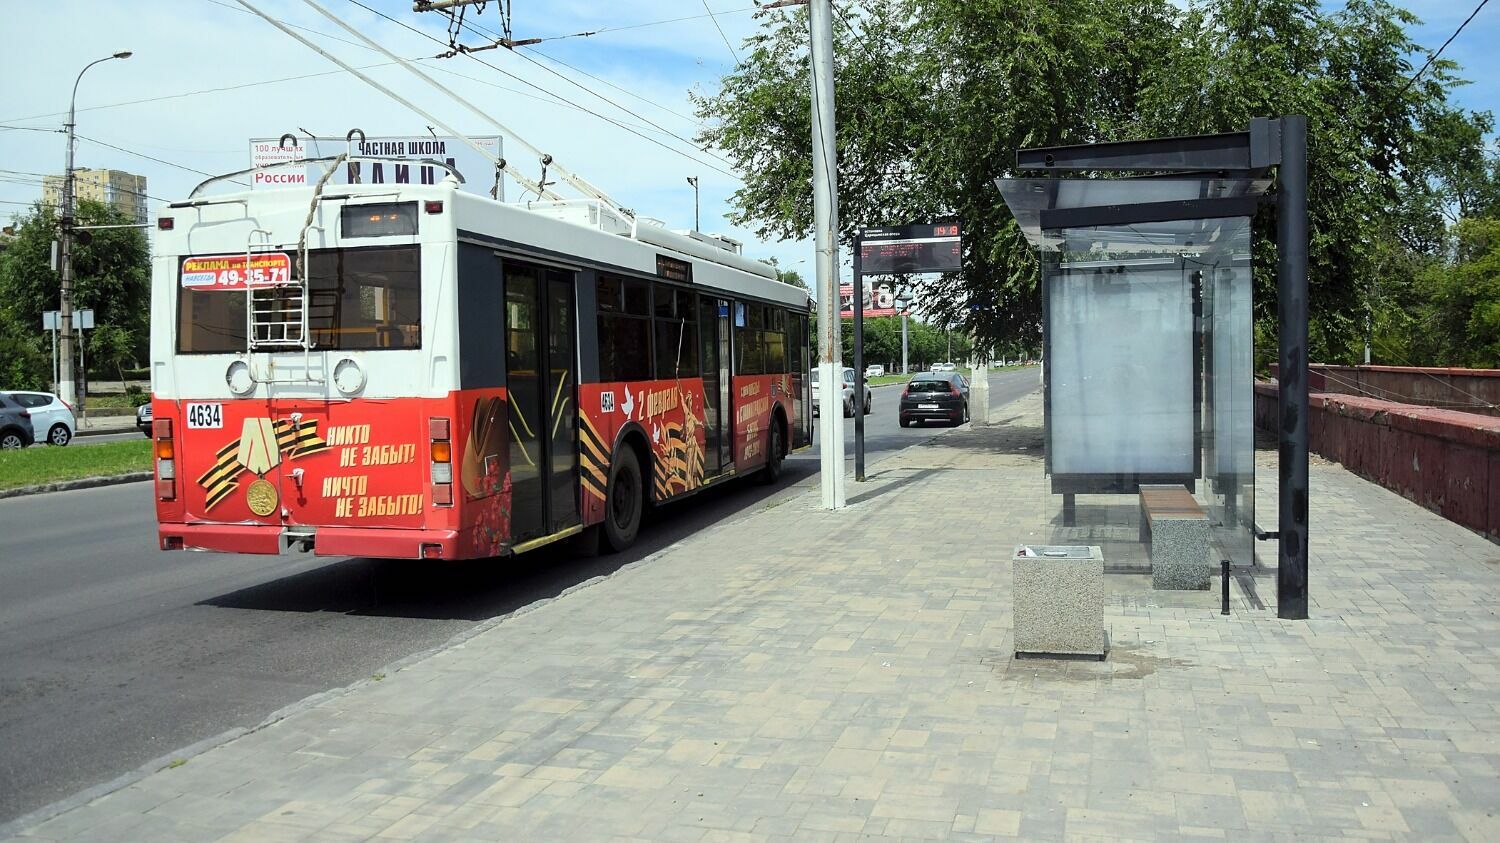 Добраться остальных районов из Краснооктябрьского  можно на троллейбусах, автобусах и маршрутках